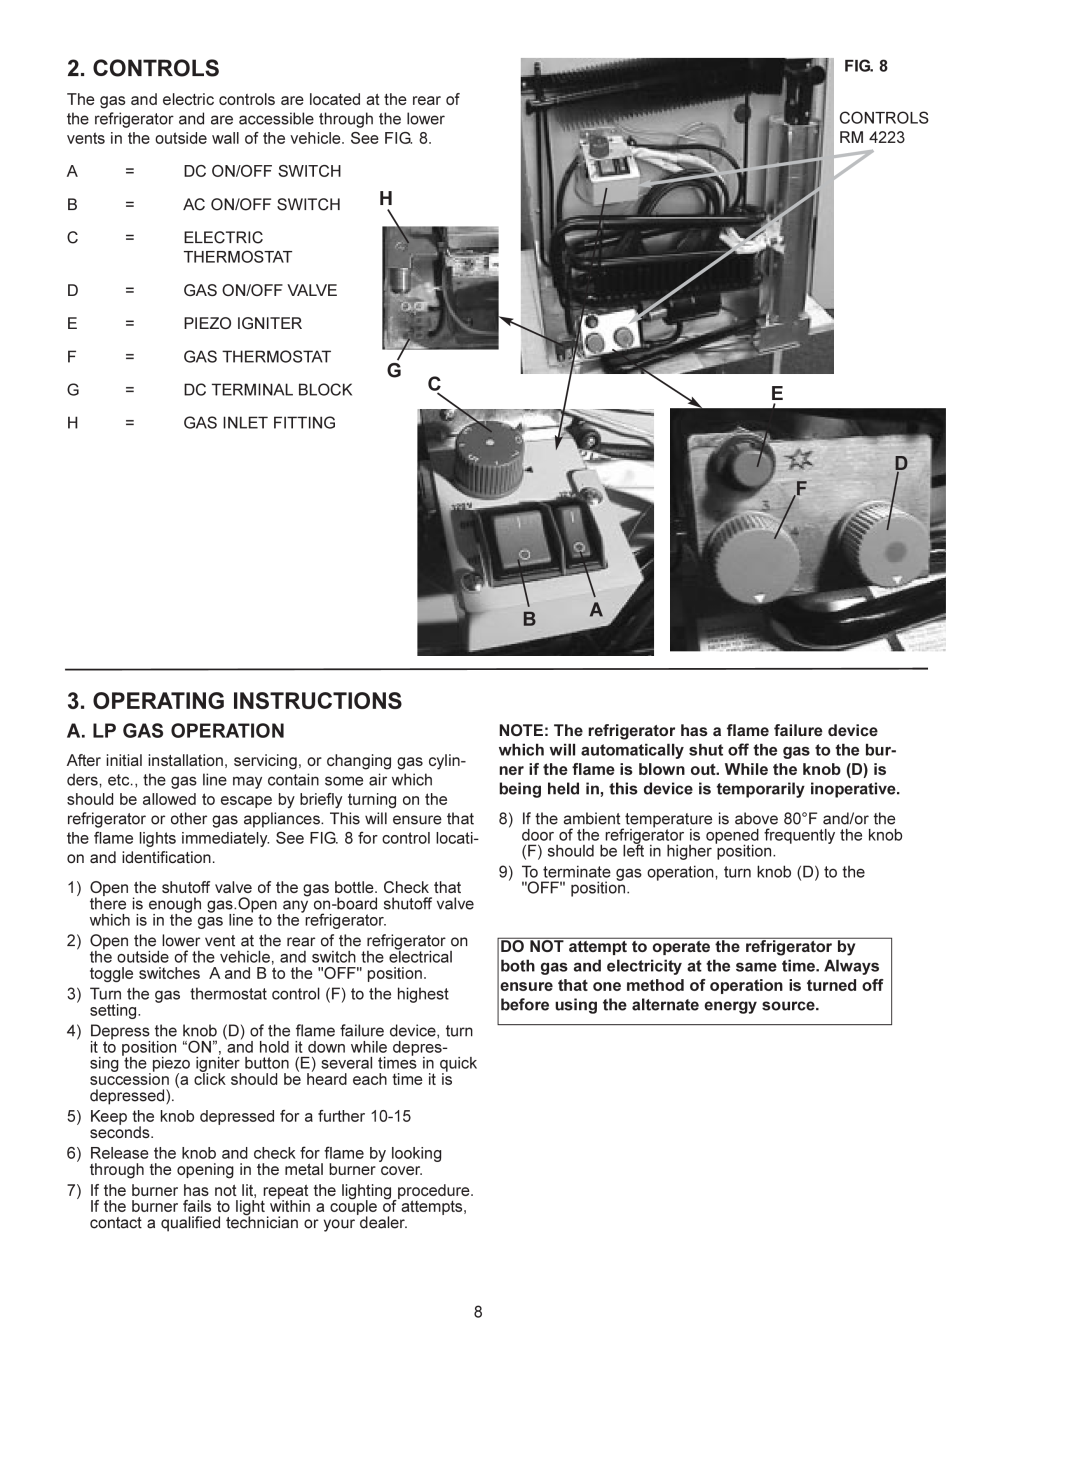 Dometic RM 4223 manual Controls, Operating Instructions, A. Lp Gas Operation, E D F Ba 